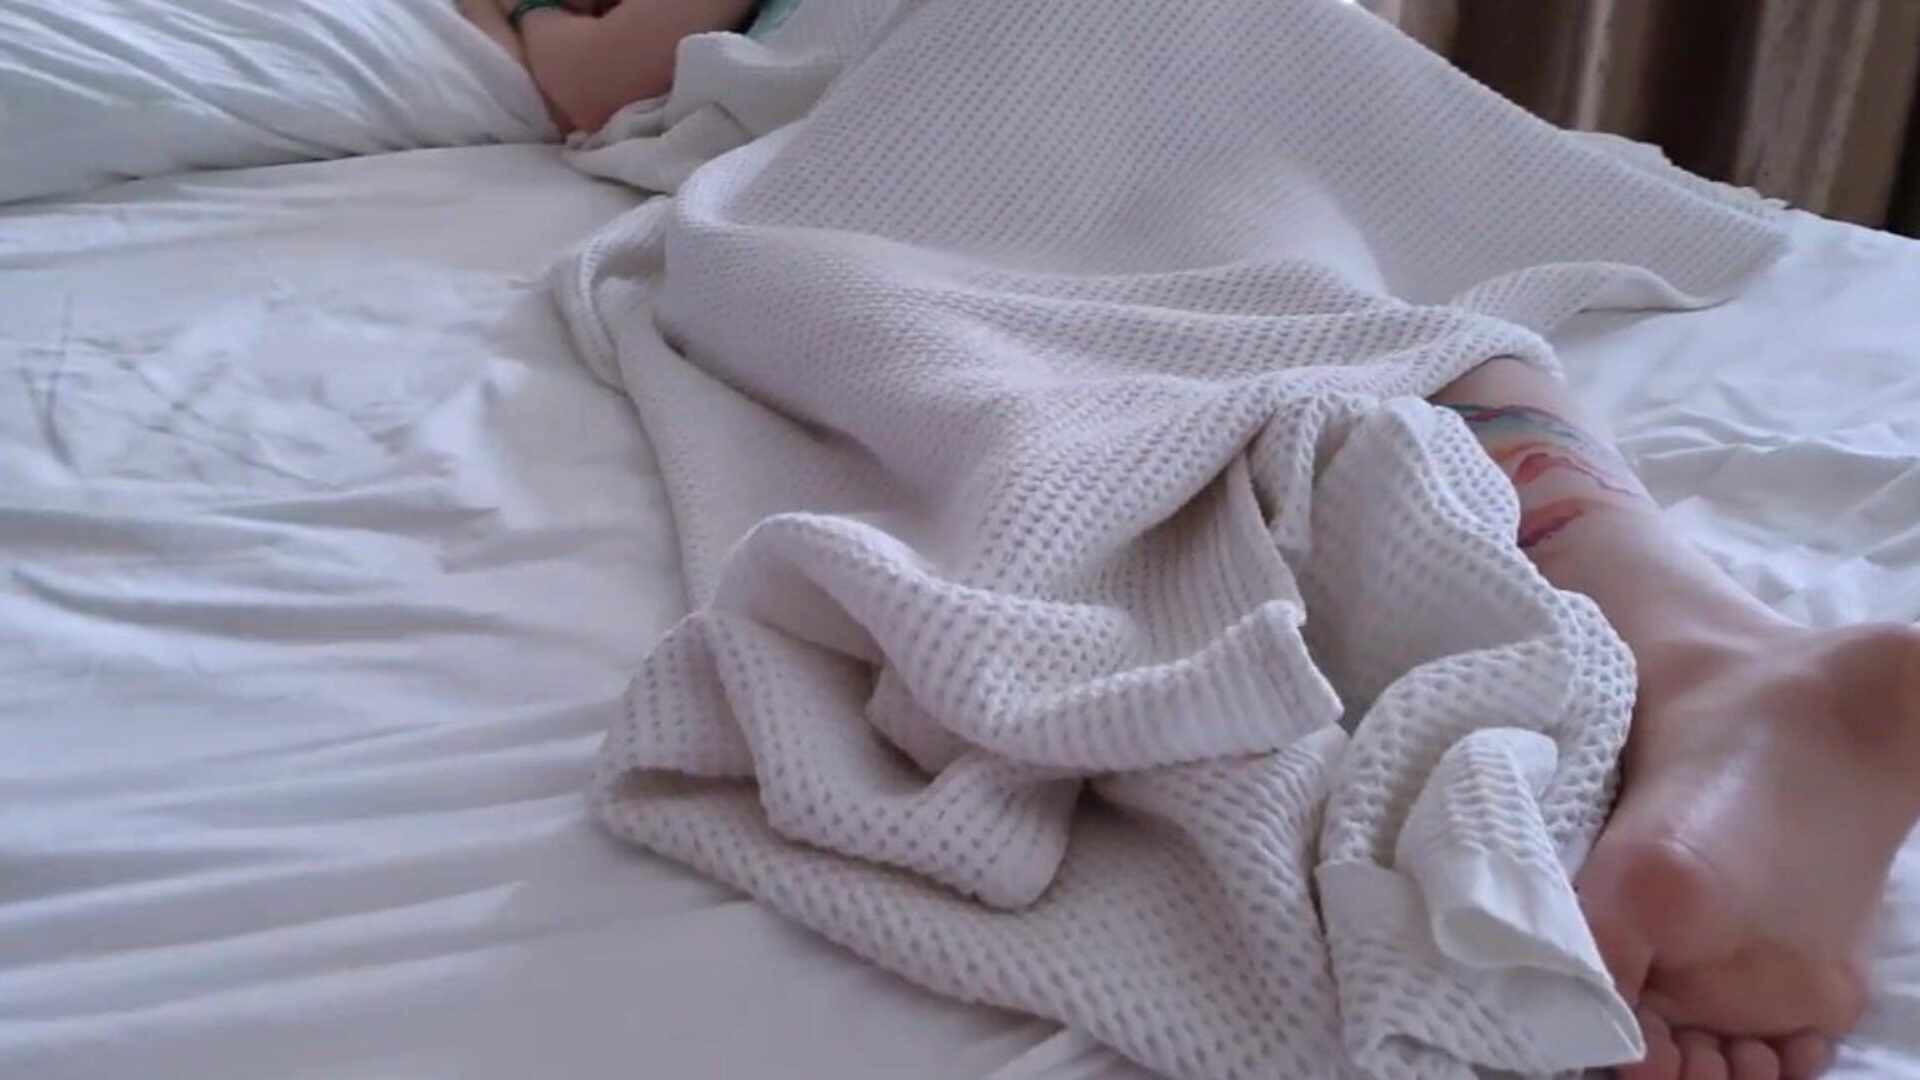 Teen im Hotelzimmer gefickt und auf ihre Muschi gespritzt